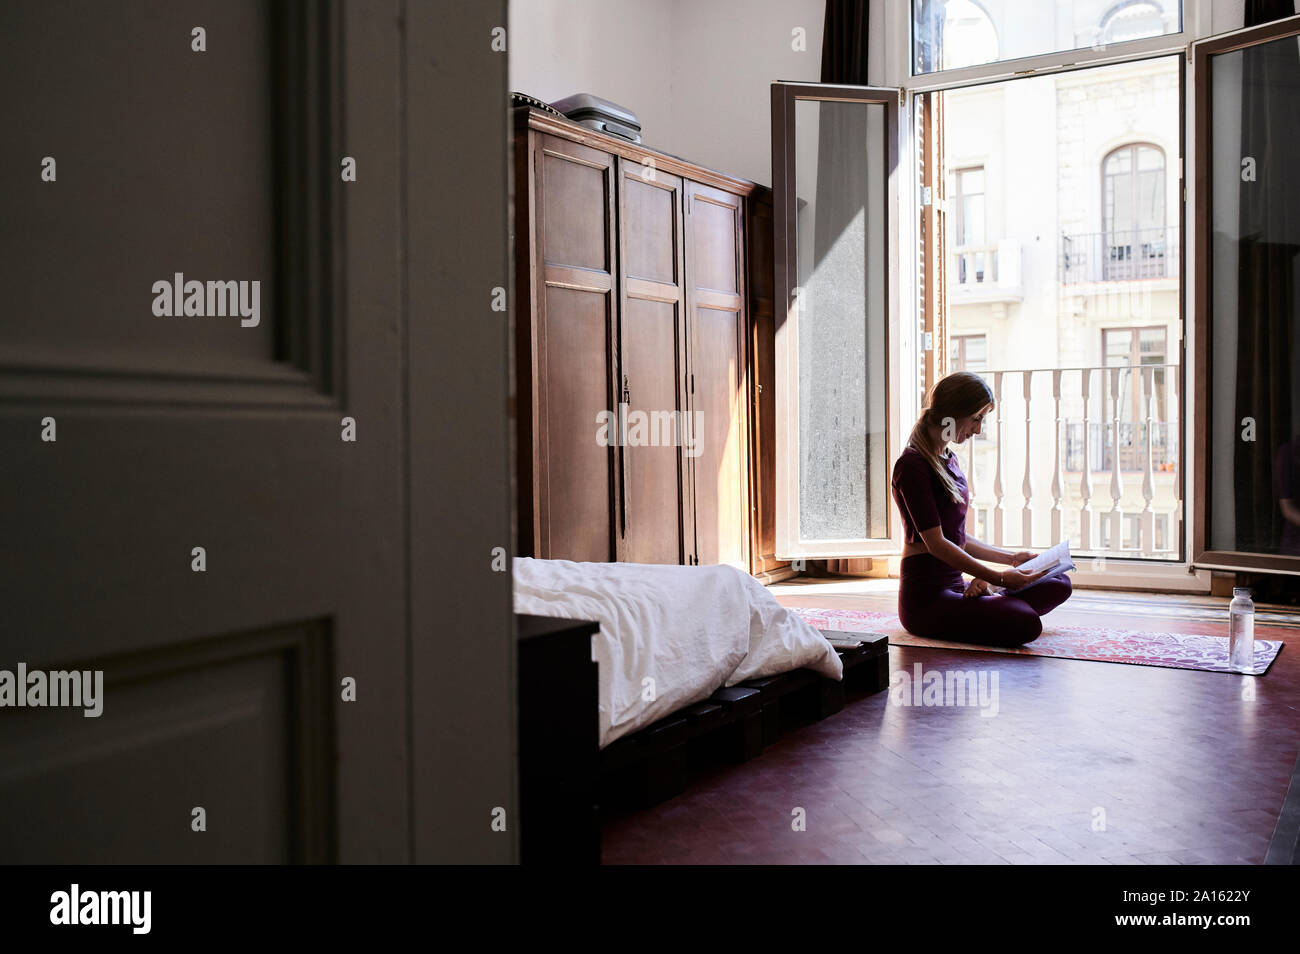 Jeune brunette woman practicing yoga in chambres d'étudiants, la lecture d'un livre Banque D'Images